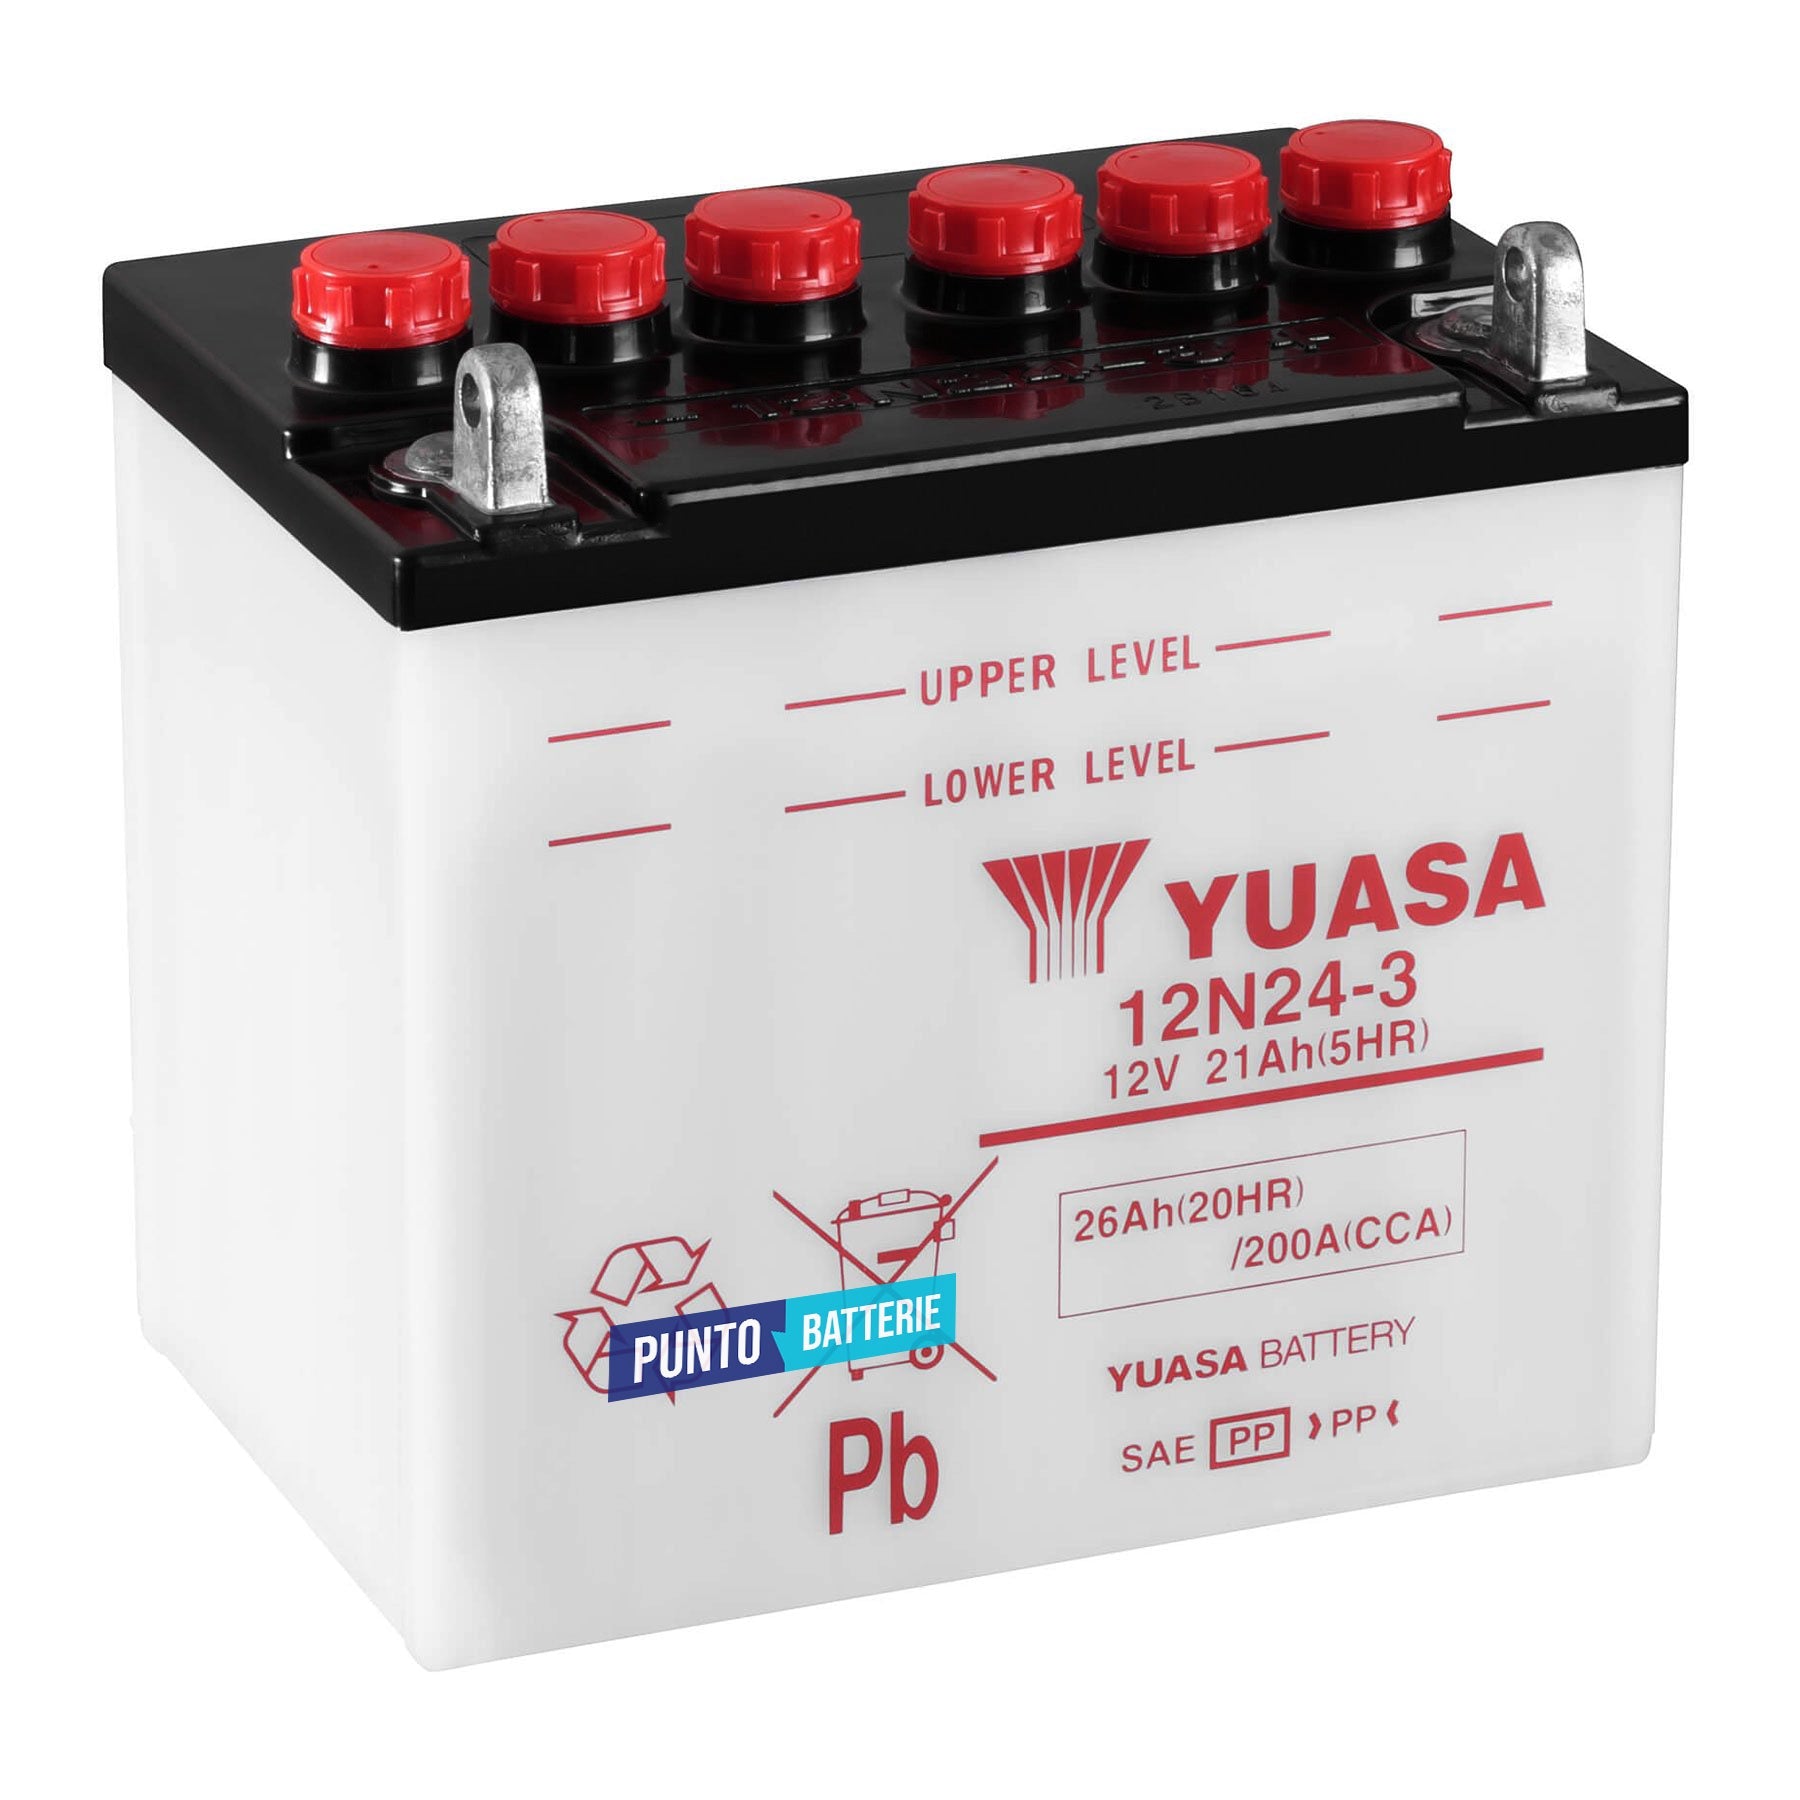 Batteria originale Yuasa Conventional 12N24-3, dimensioni 184 x 124 x 175, polo positivo a destra, 12 volt, 24 amperora, 200 ampere. Batteria per moto, scooter e powersport.